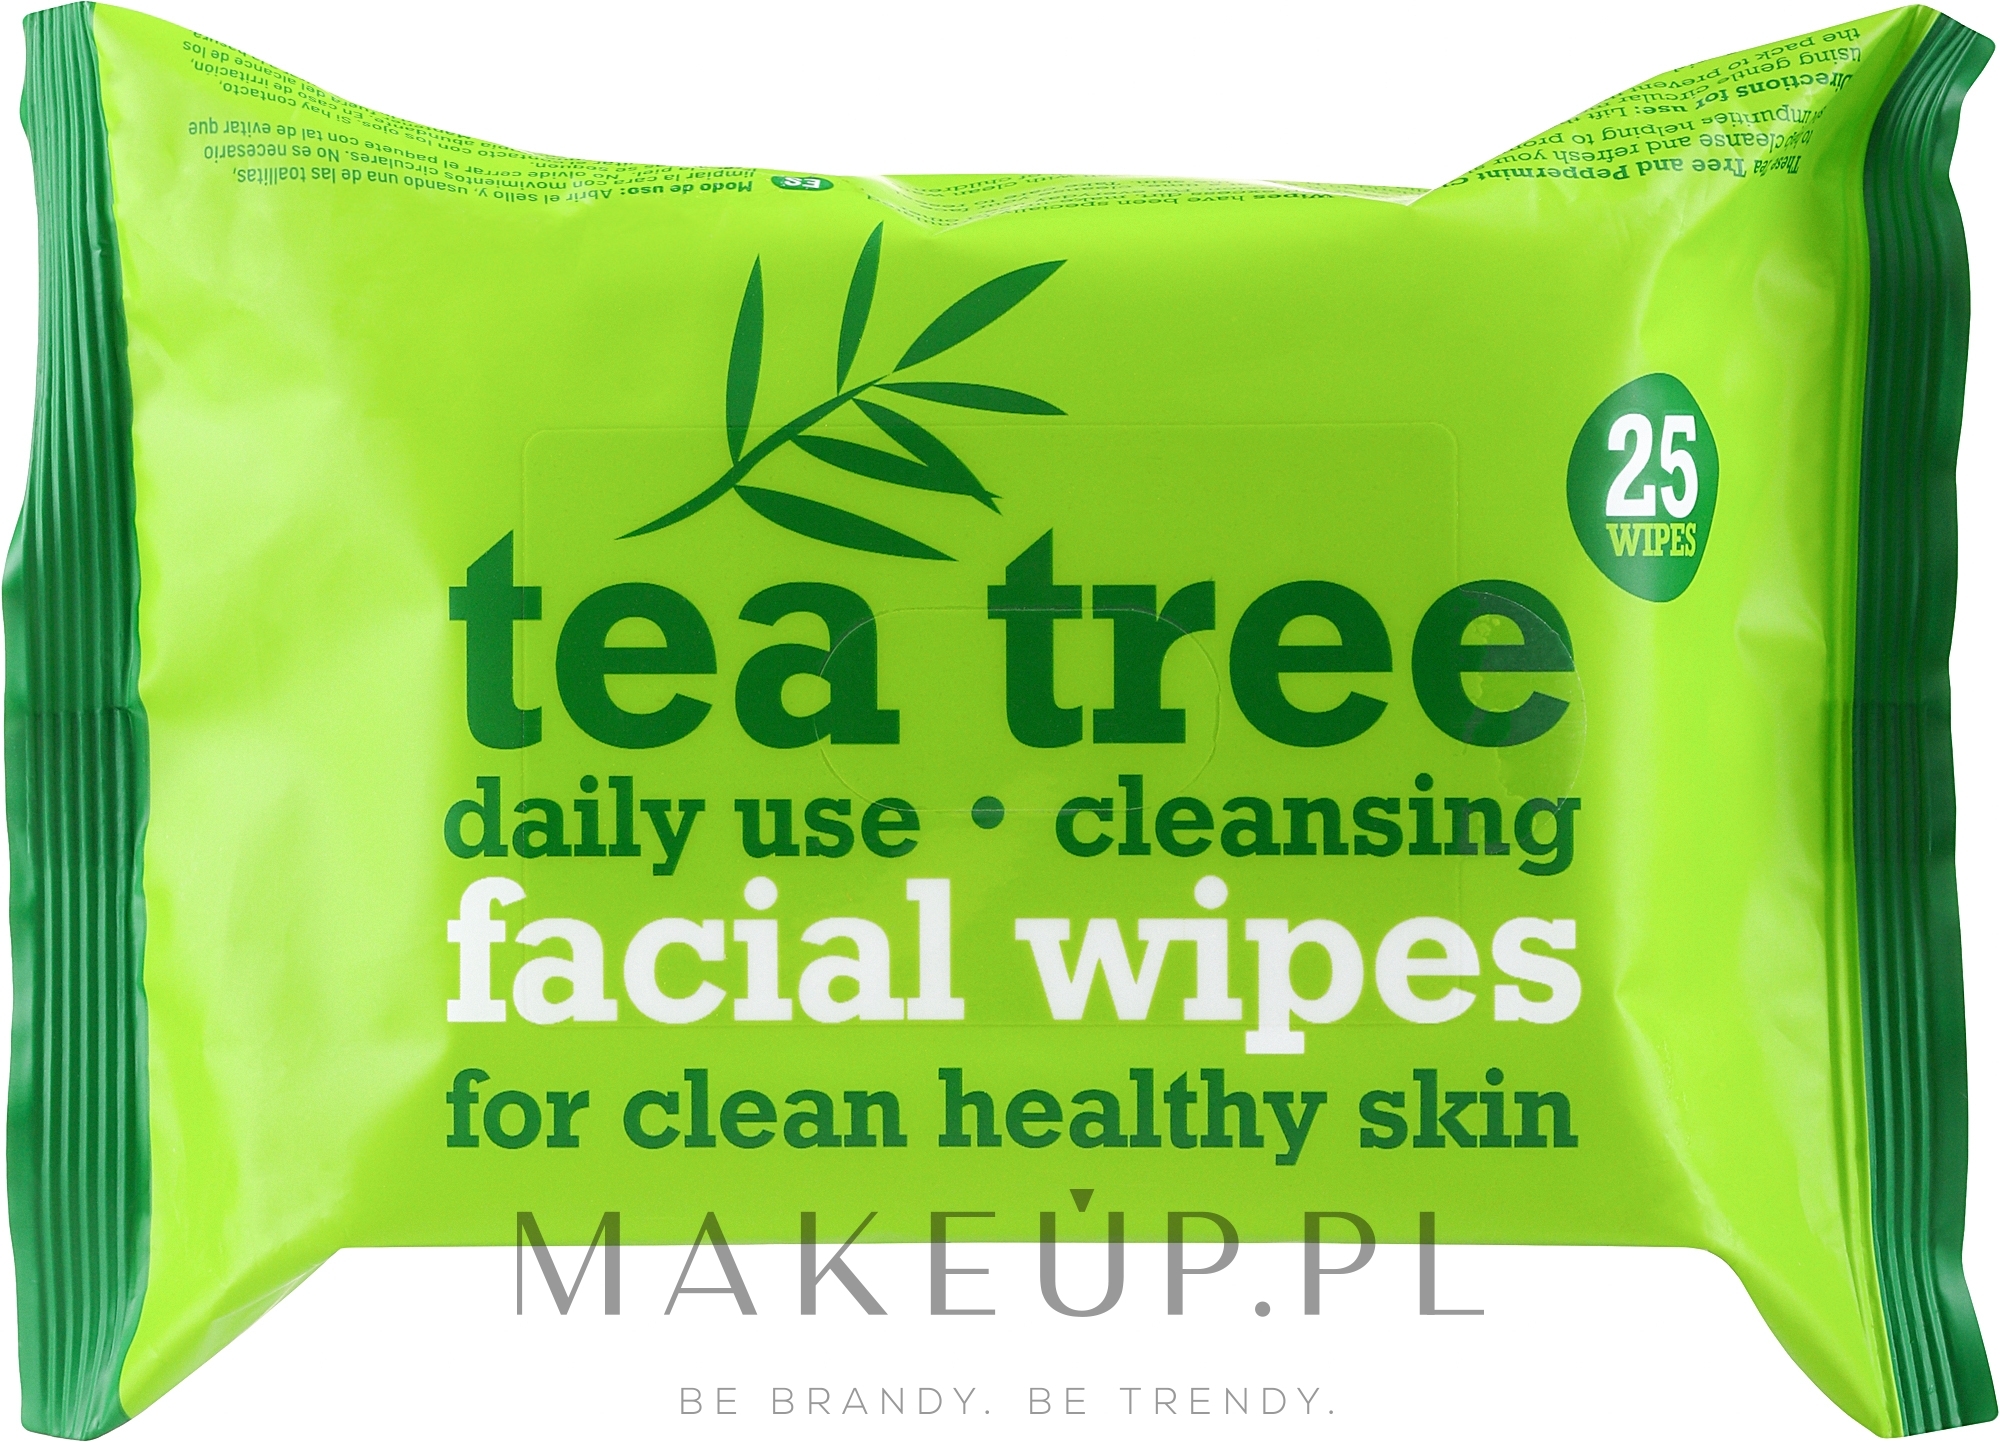 Oczyszczające chusteczki do twarzy 25 szt. - Xpel Marketing Ltd Tea Tree Facial Wipes For Clean Healthy Skin — Zdjęcie 25 szt.